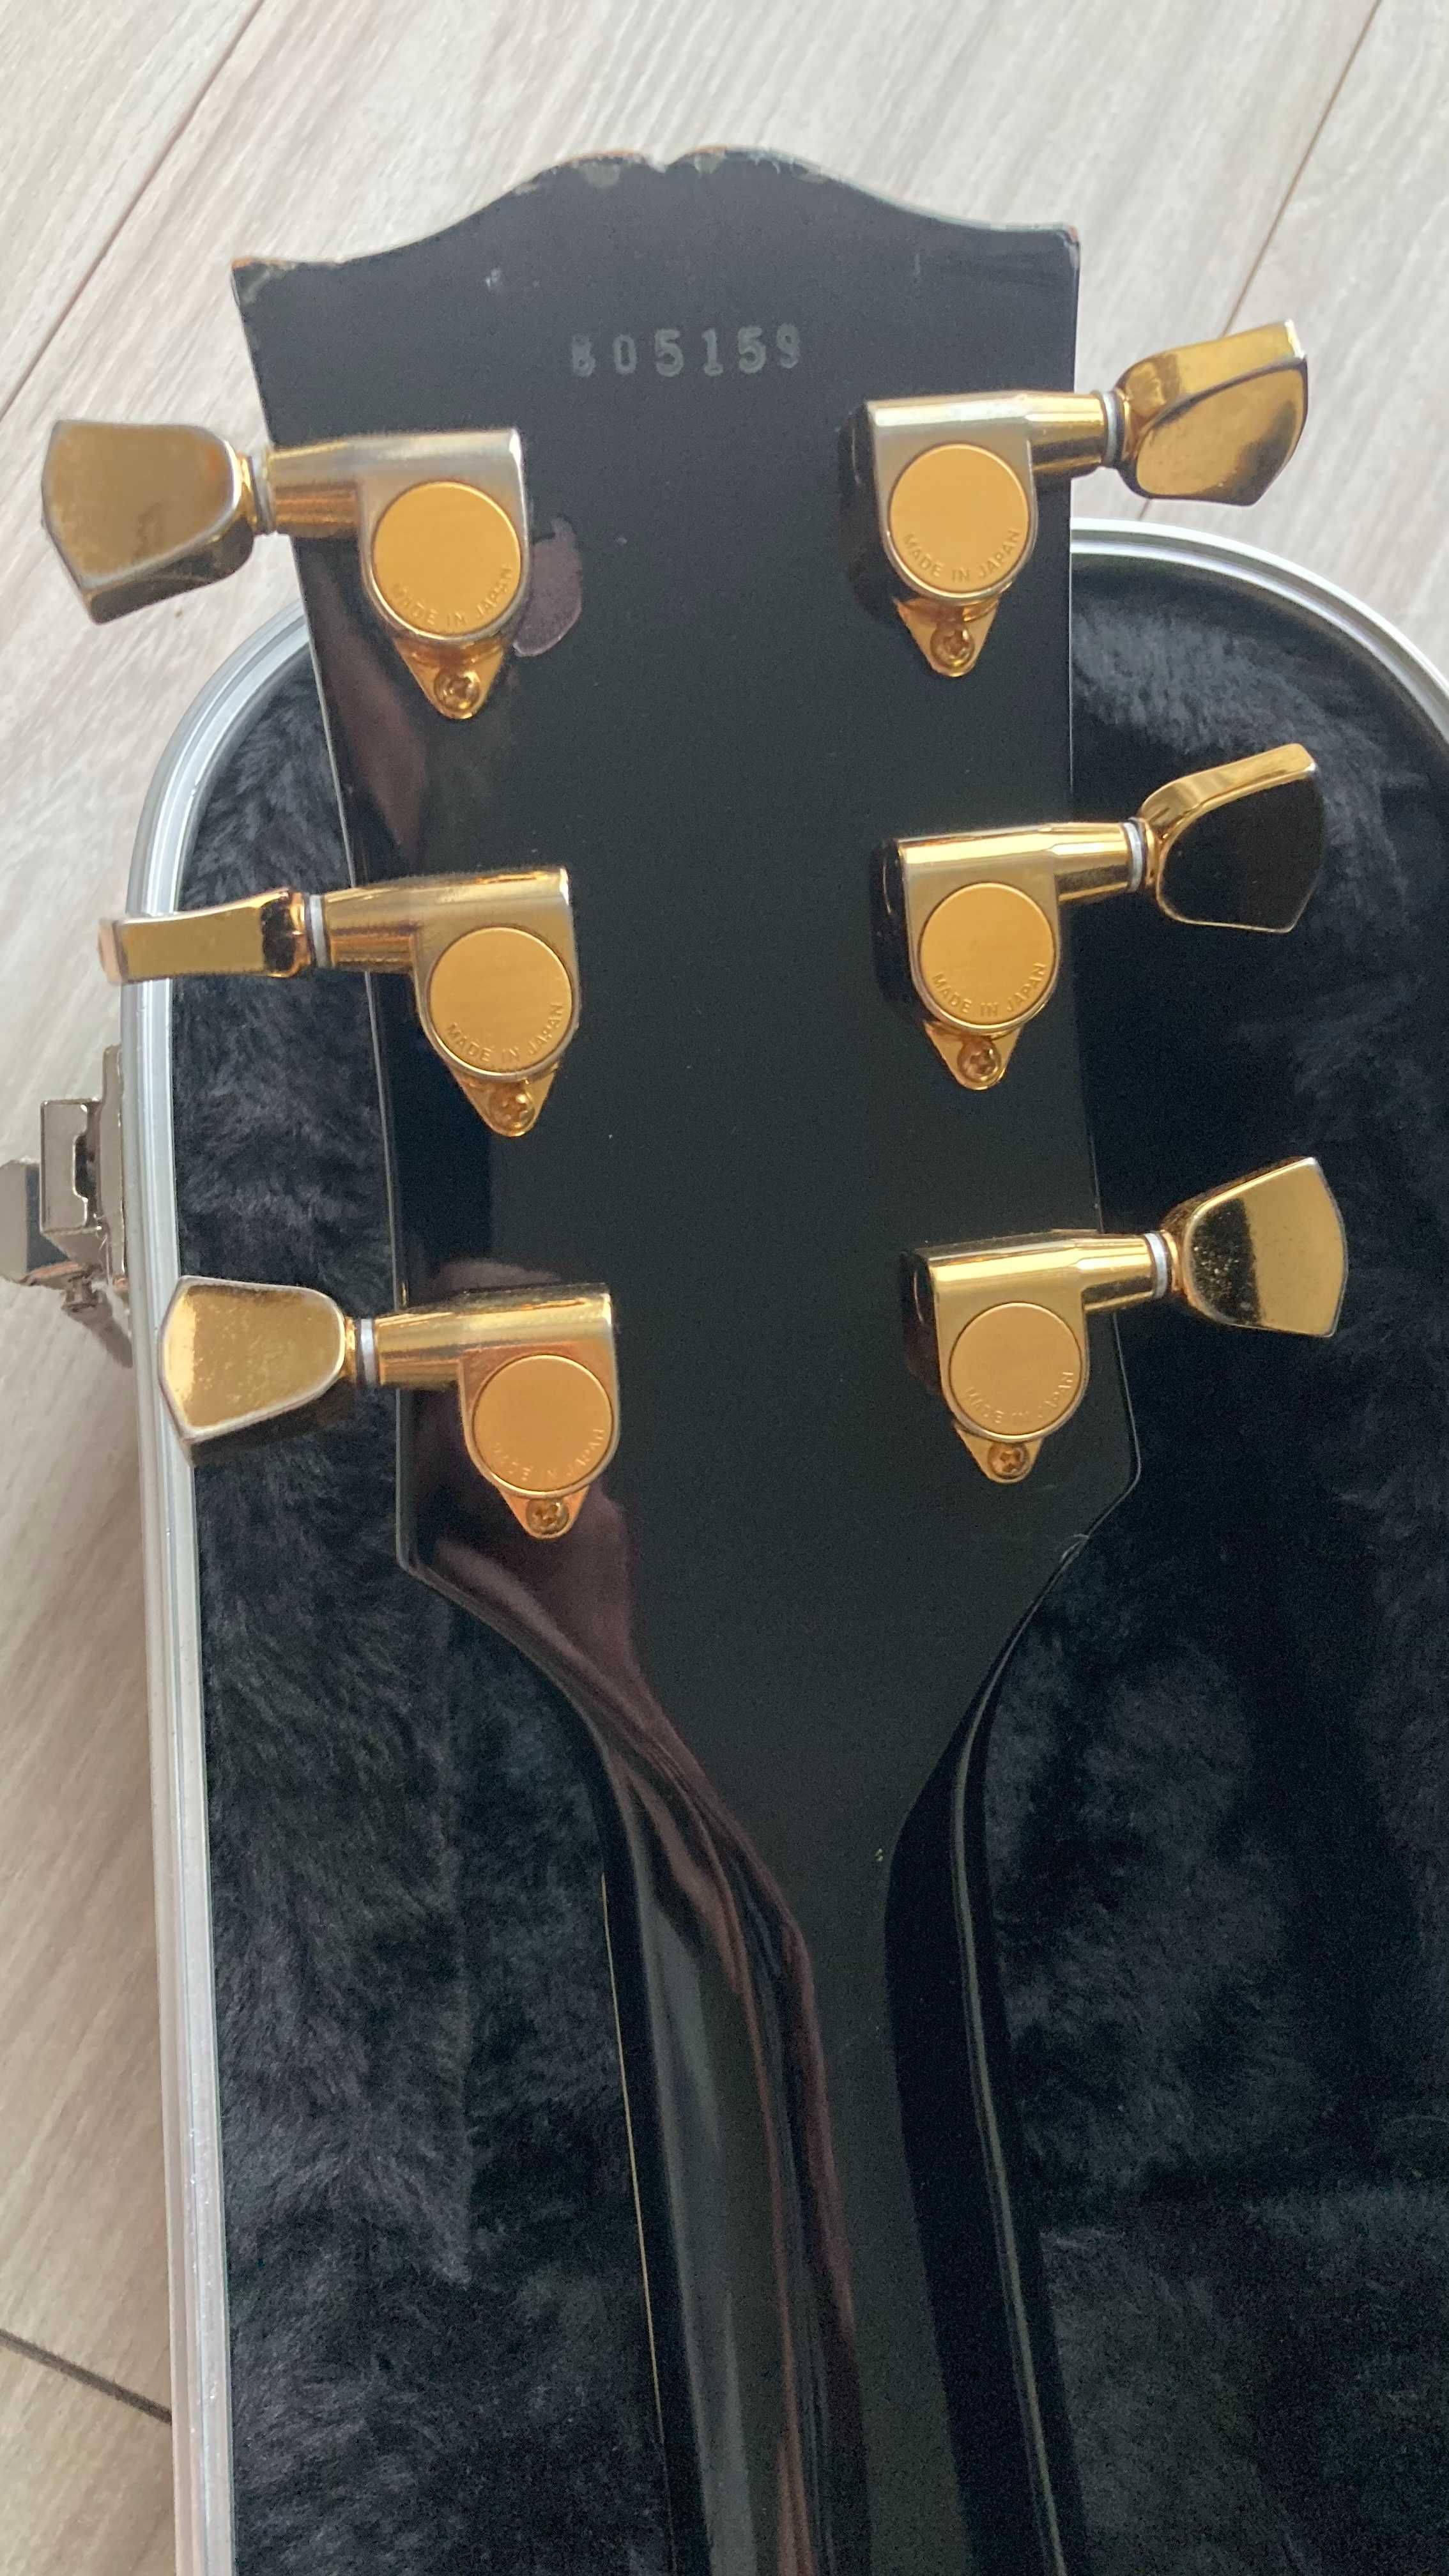 Gitara ORVILLE LES PAUL Black Beauty made in Japan  + Duesenberg TM85G